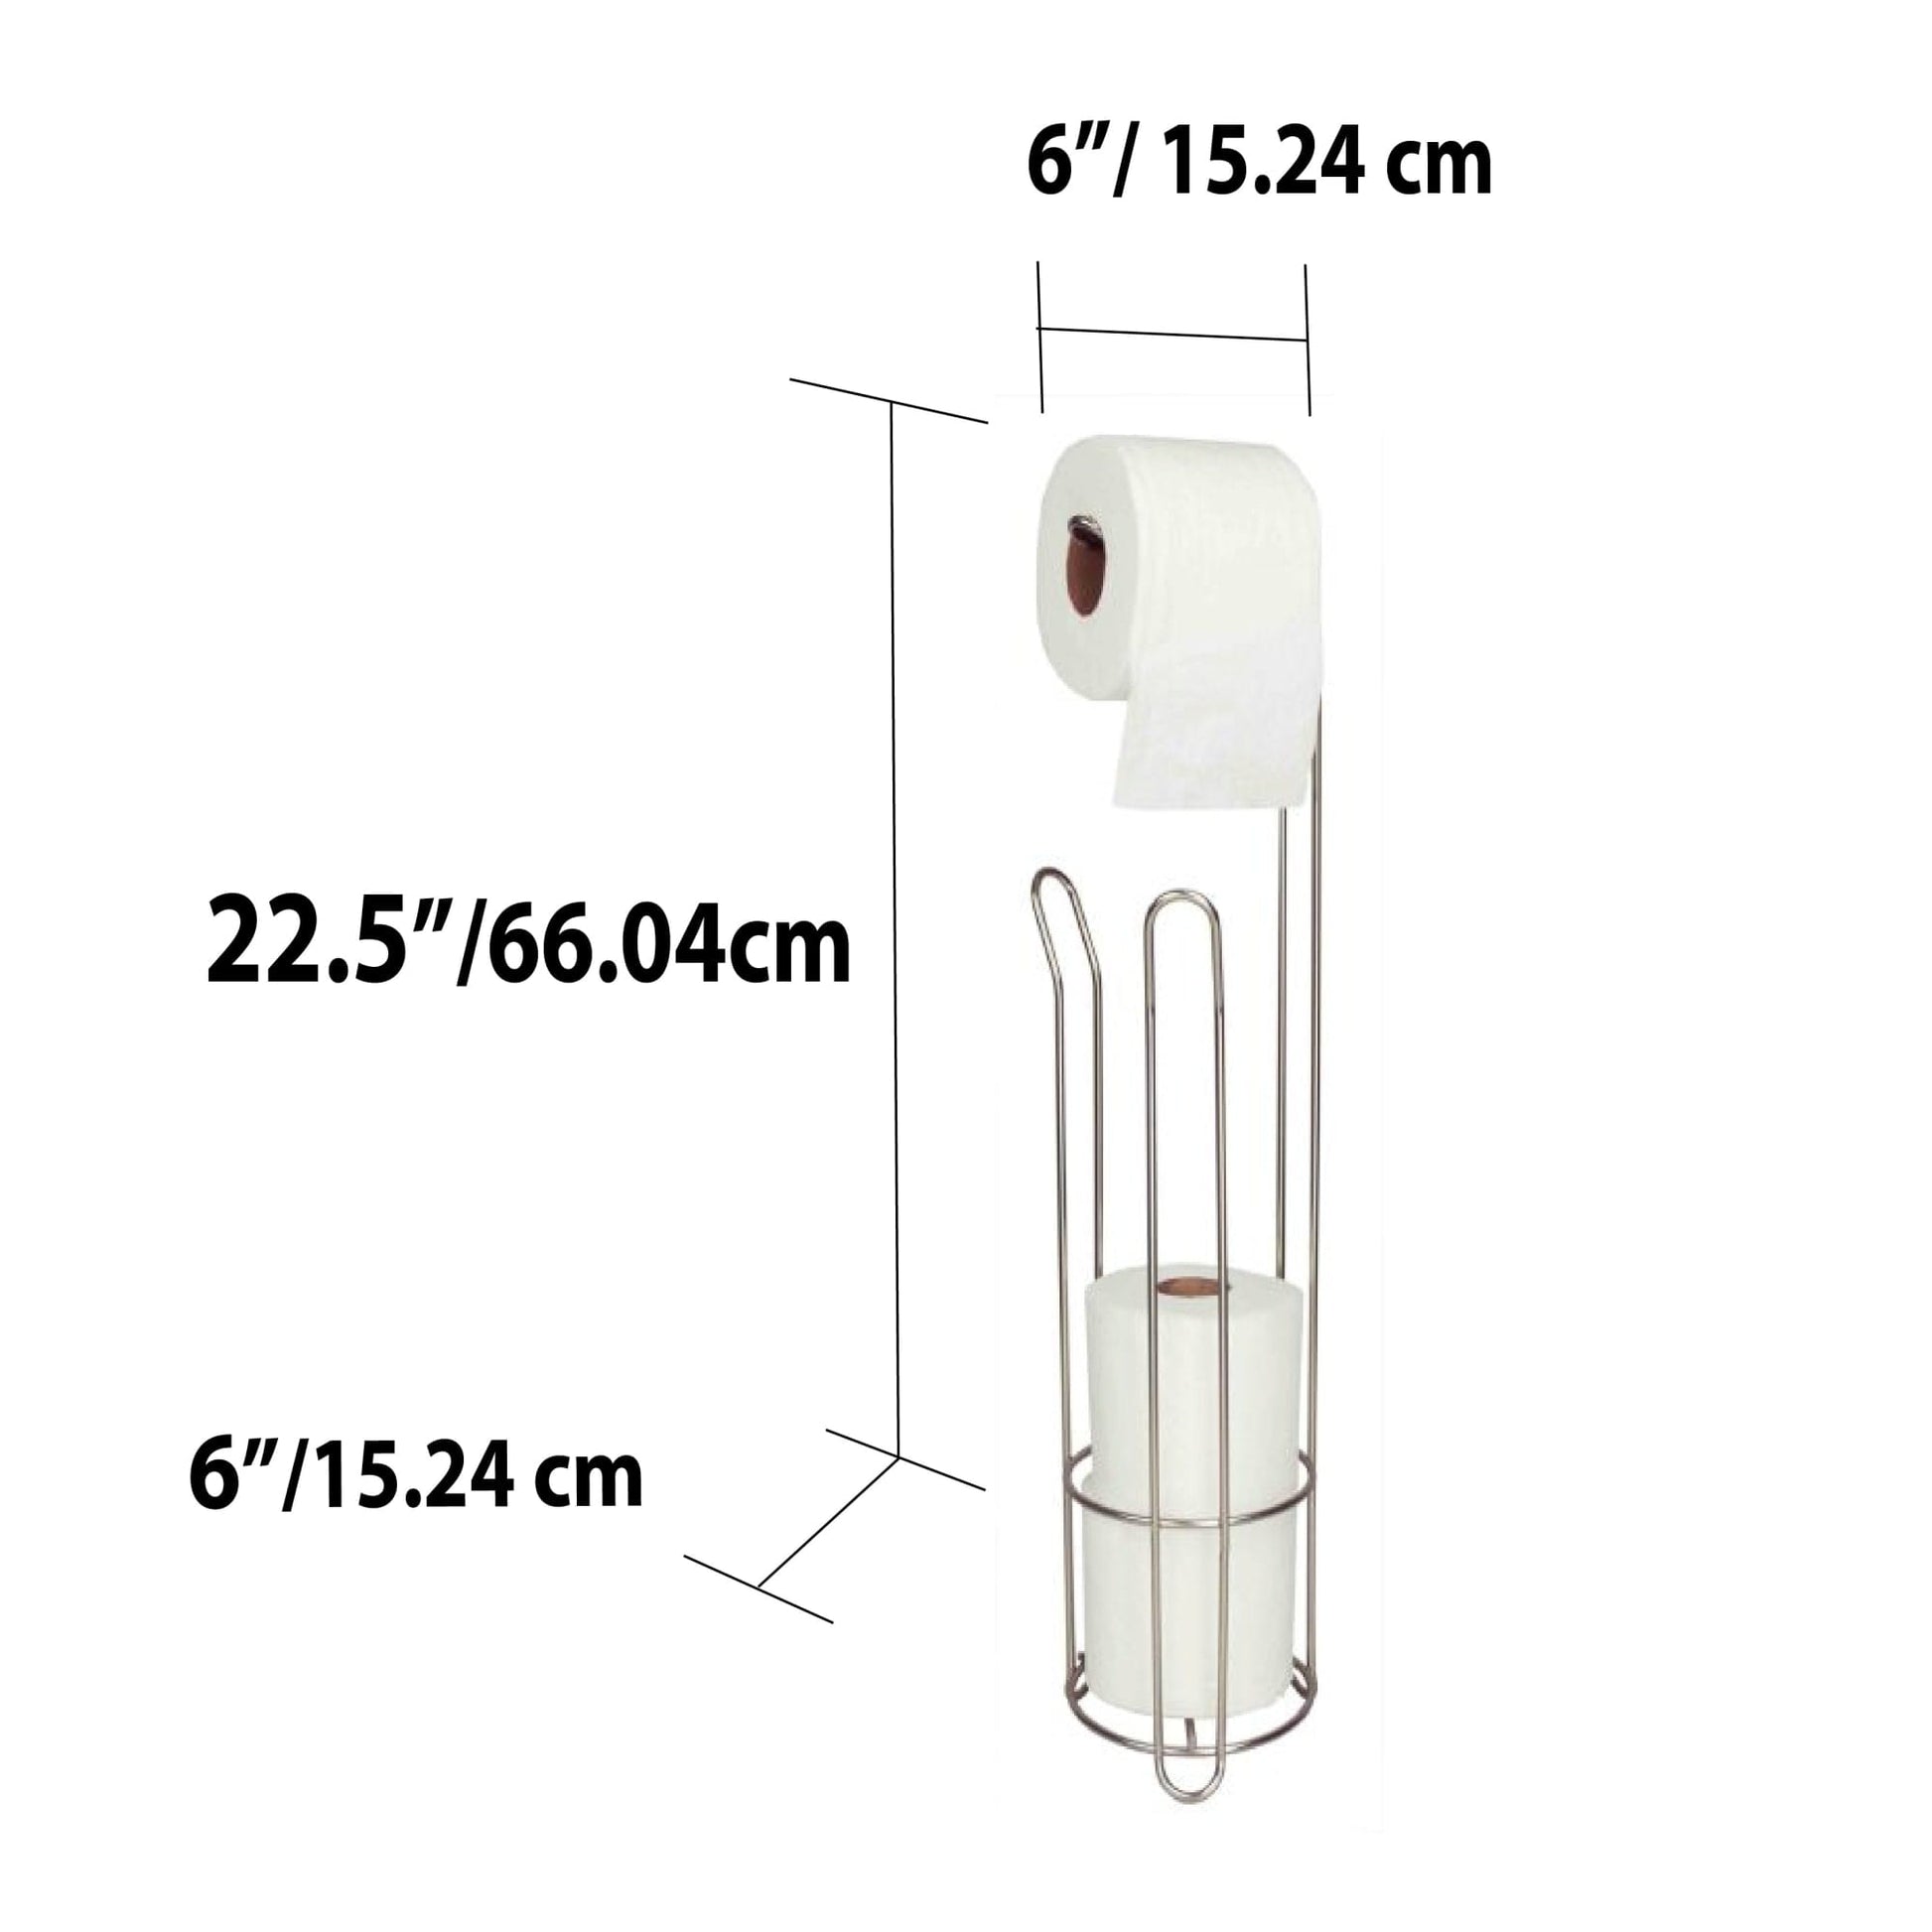 mDesign Metal Over The Tank Toilet Tissue Paper Roll Holder Dispenser - Chrome